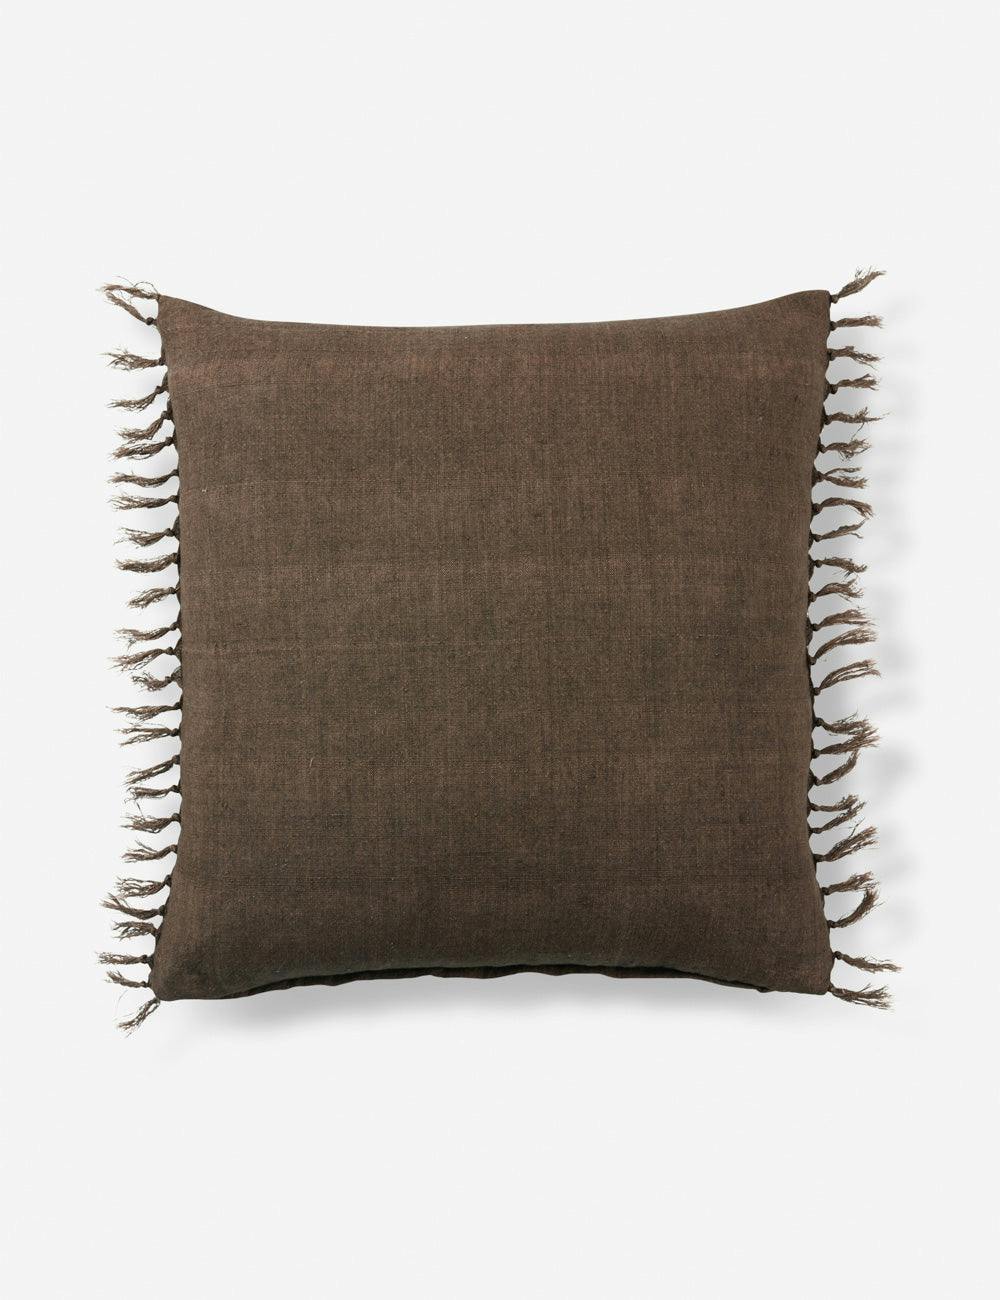 Bohemian Linen Tasseled Throw Pillow - Brown, 20" x 20"